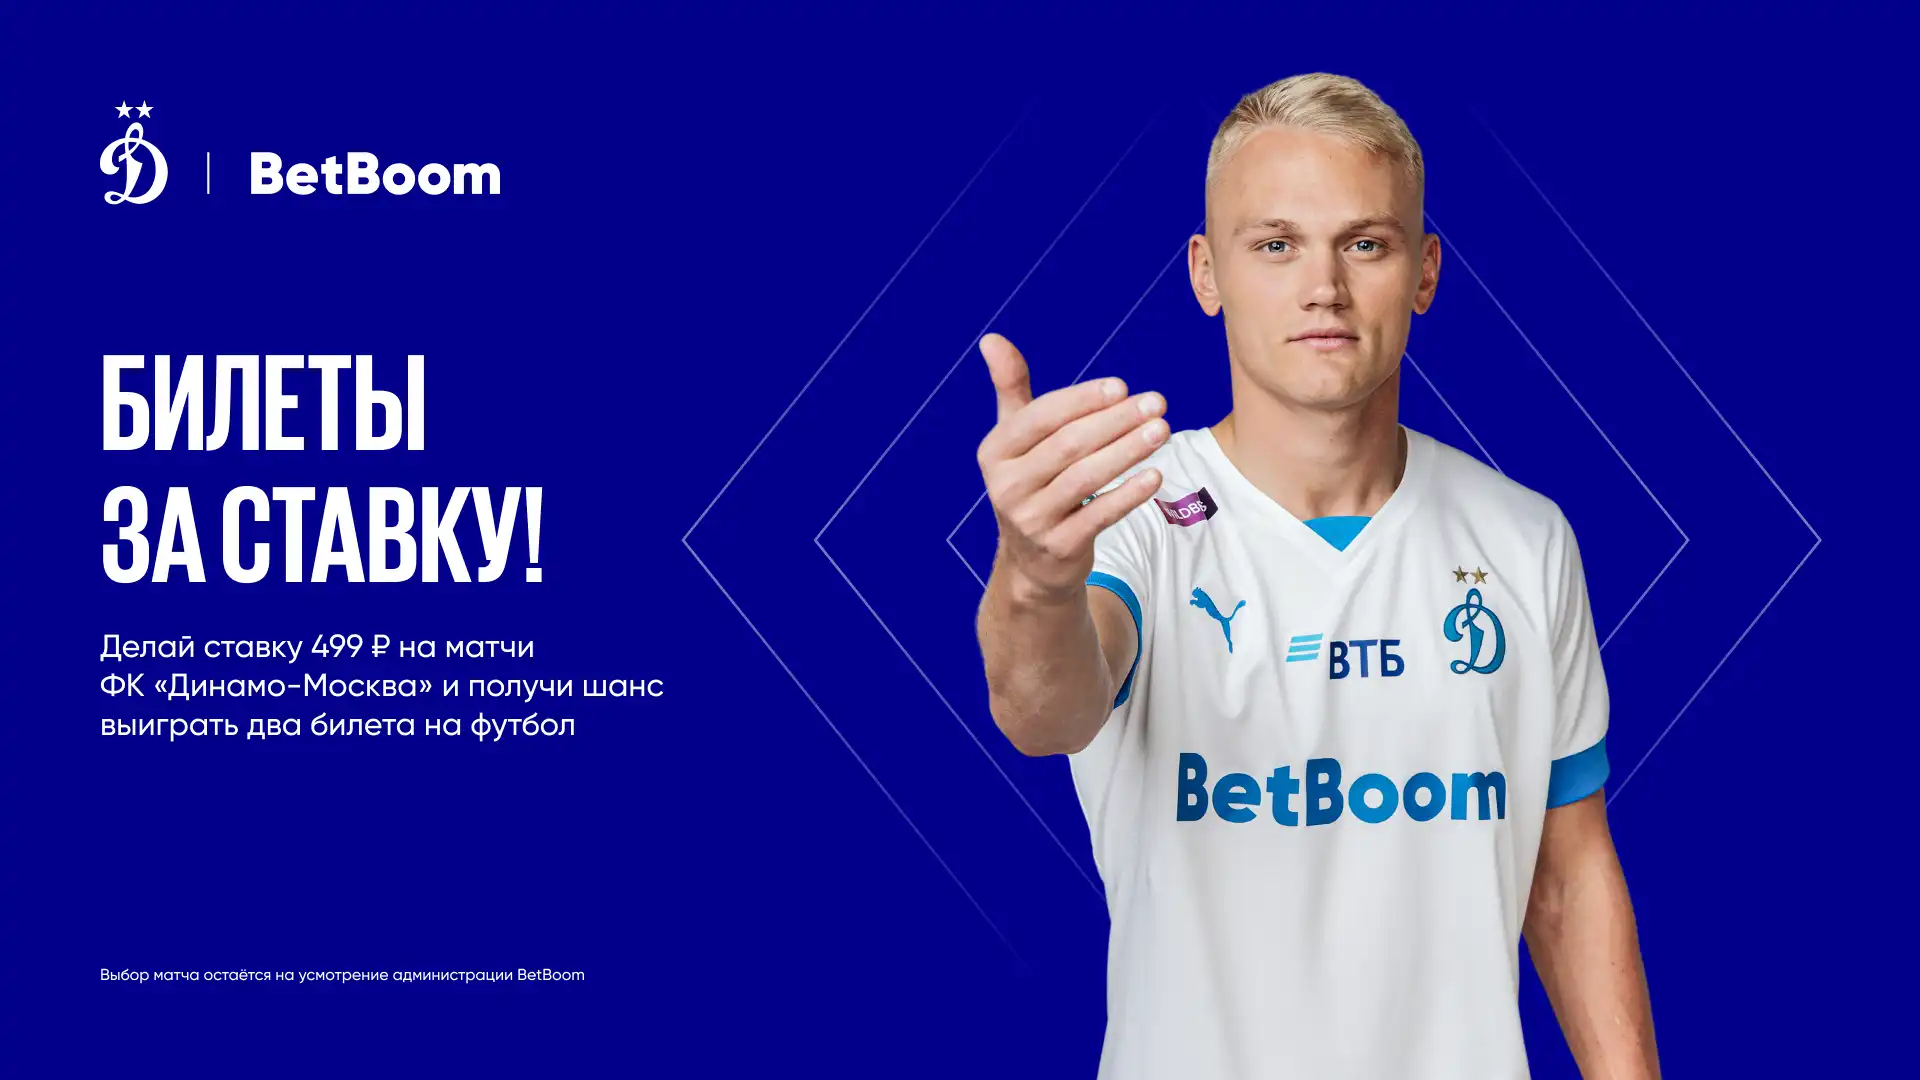 BetBoom дарит клиентам билеты на футбол